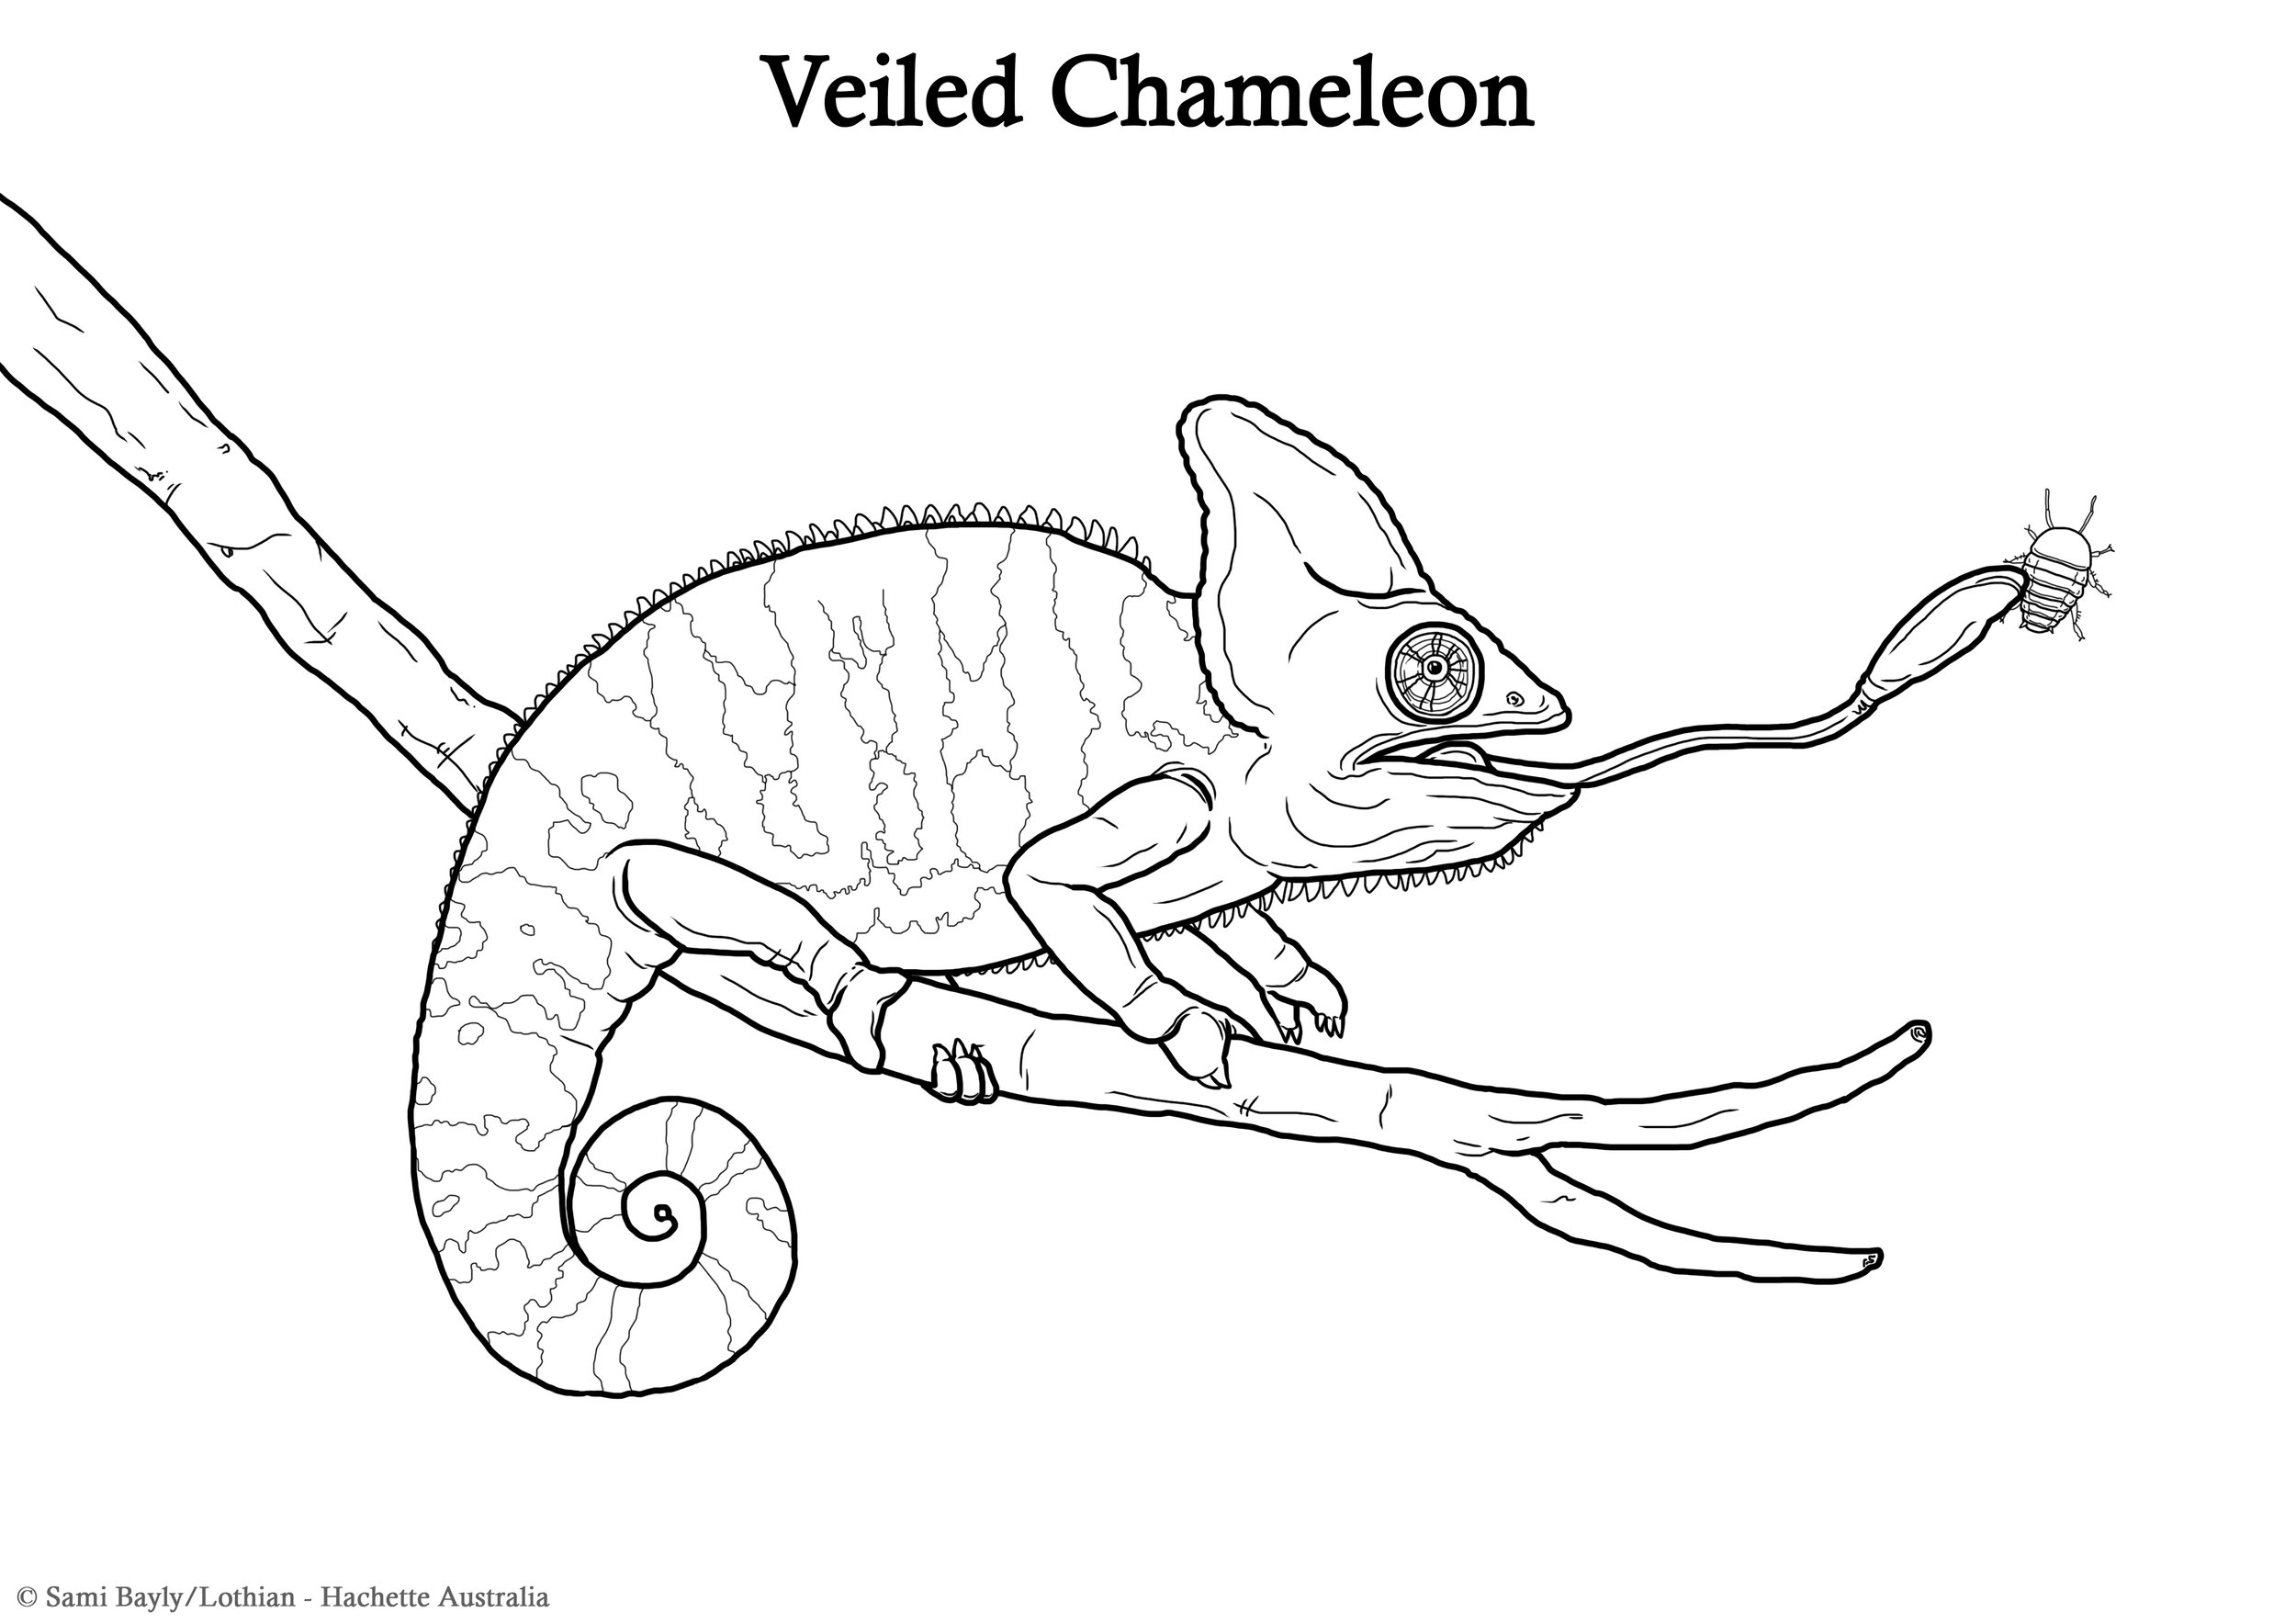 Veiled Chameleon Line Drawing.jpg